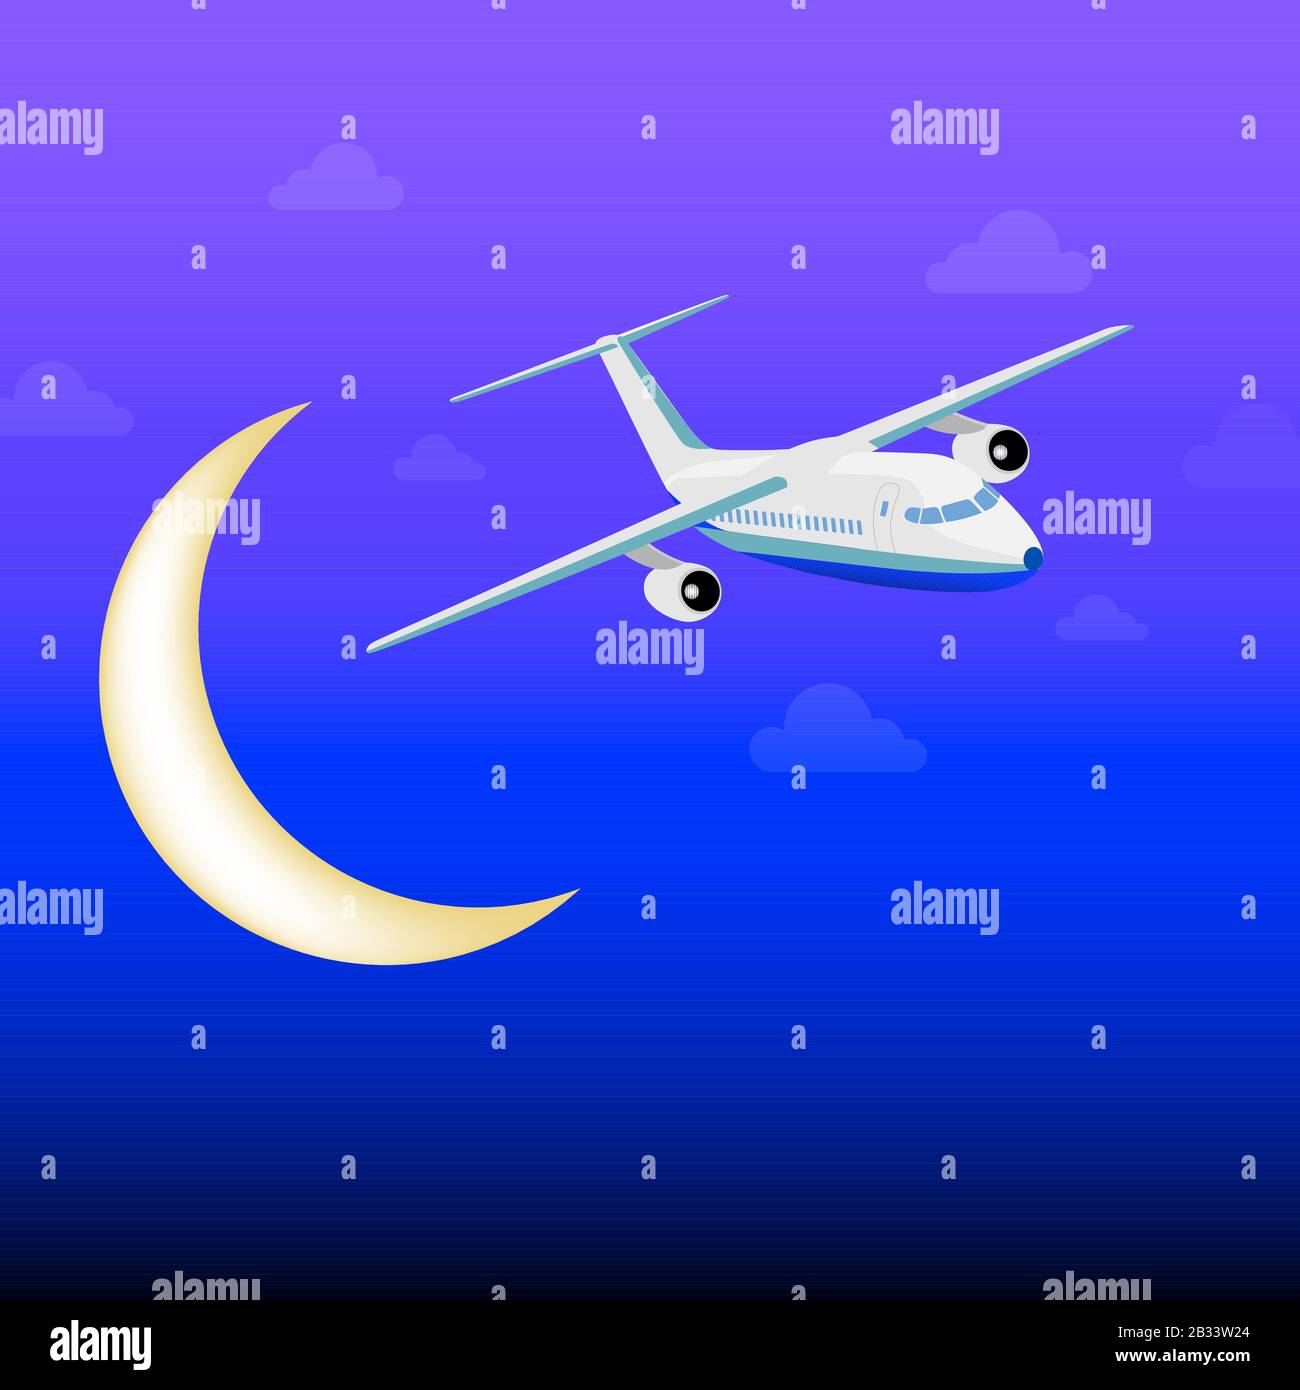 Avion de passagers blanc volant entre les nuages dans la nuit. Fond bleu foncé. Illustration de Vecteur